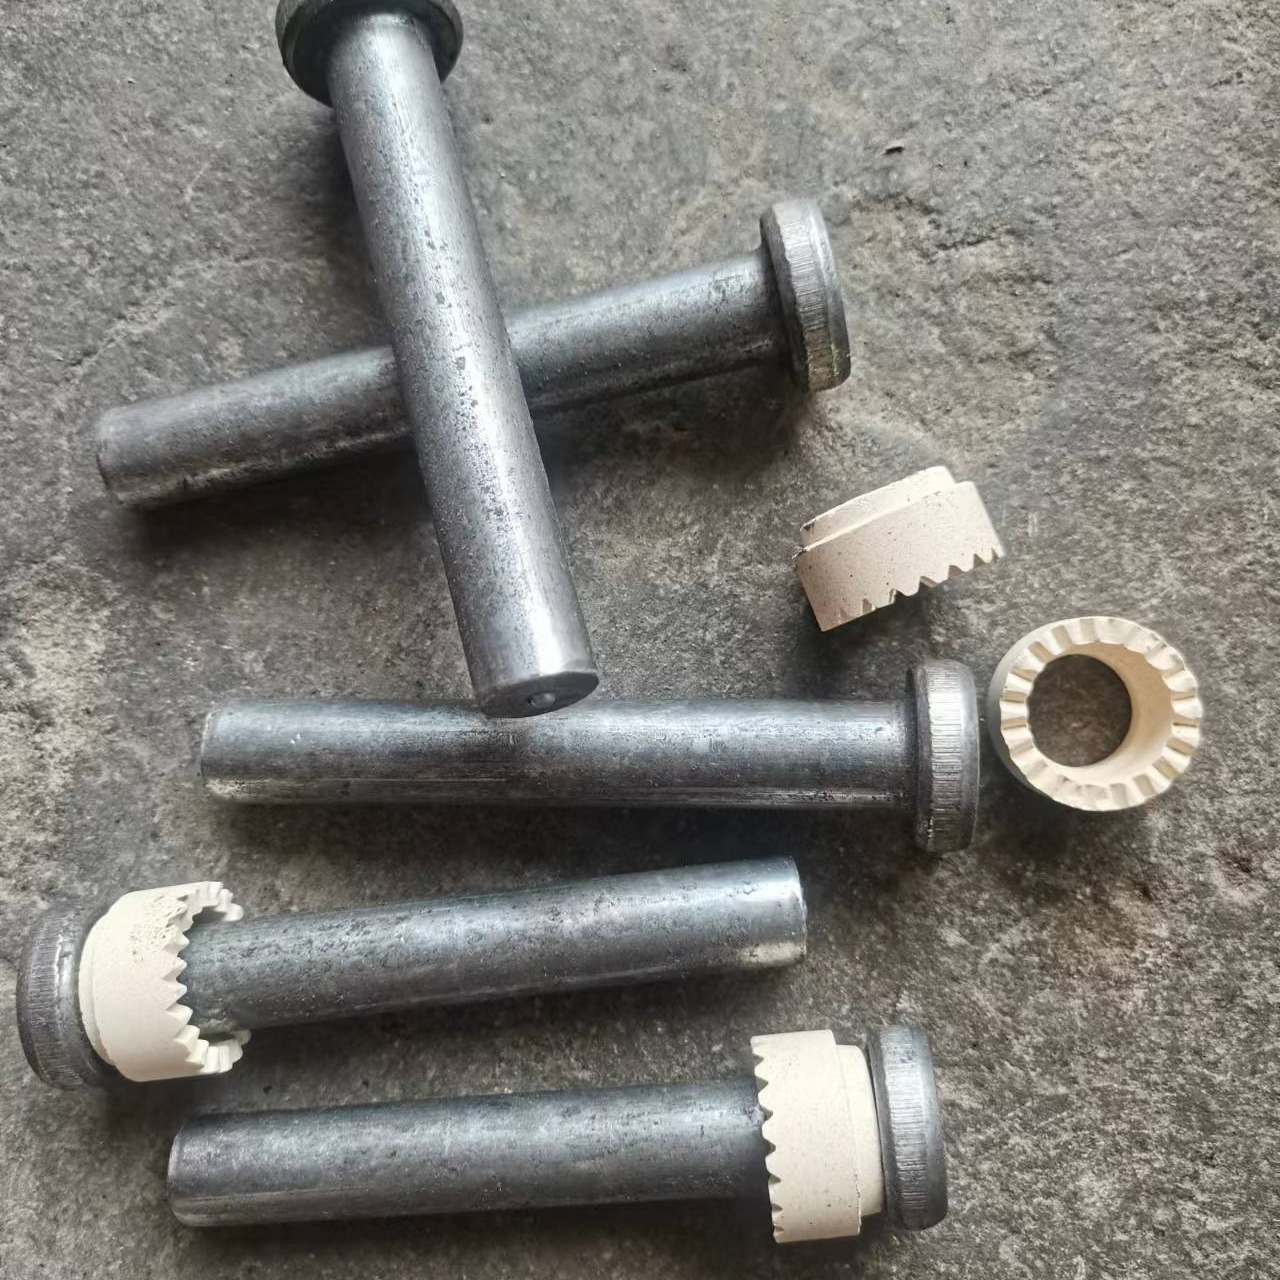 焊钉钢结构圆柱头栓钉楼承板瓷环